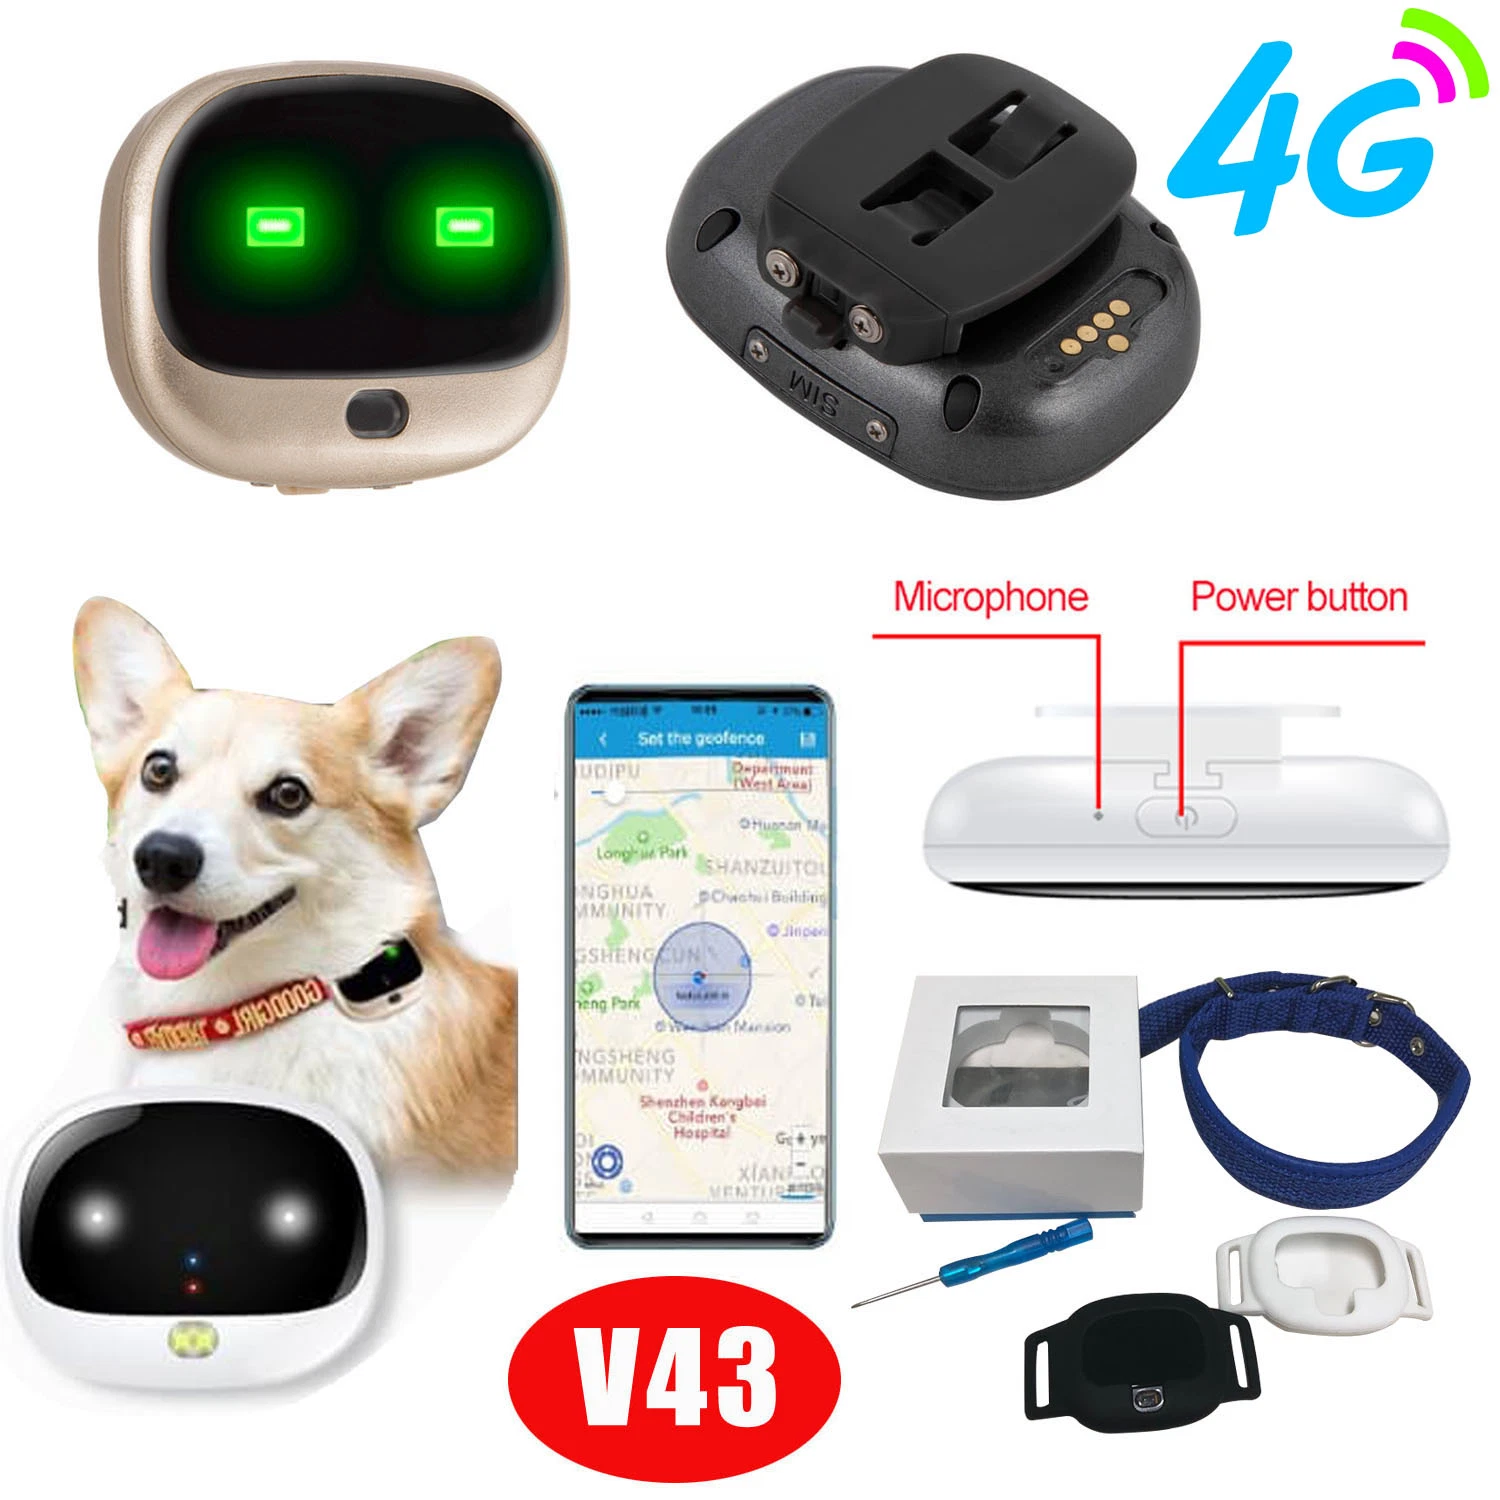 Качество Защита от потери Mini IP67 водонепроницаемость 4G Безопасность Отслеживание домашних животных Устройство отслеживания положения собаки Cat GPS с длительным временем автономной работы V43